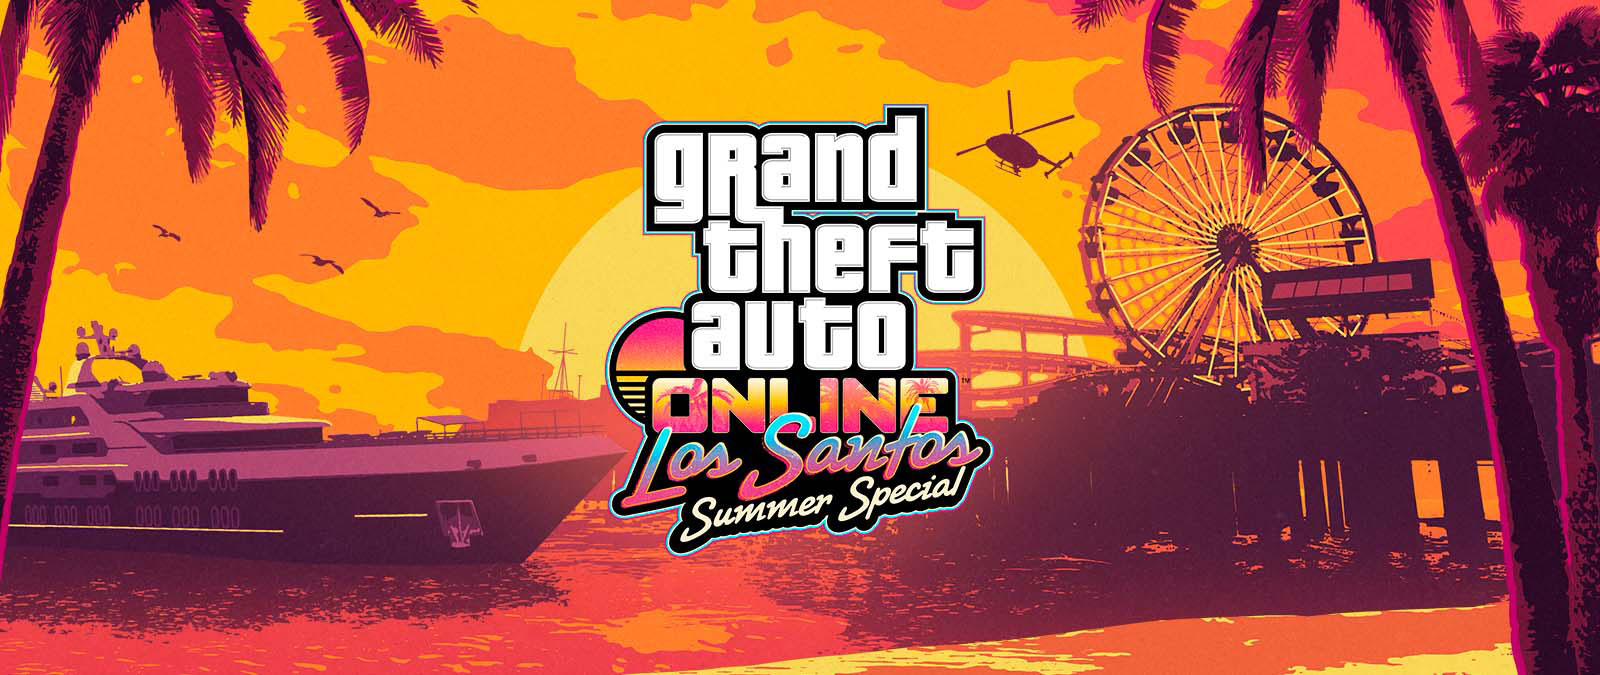 Grand Theft Auto Online. Los Santos Summer Special. Eine Jacht, ein Riesenrad und ein Hubschrauber bei Sonnenuntergang